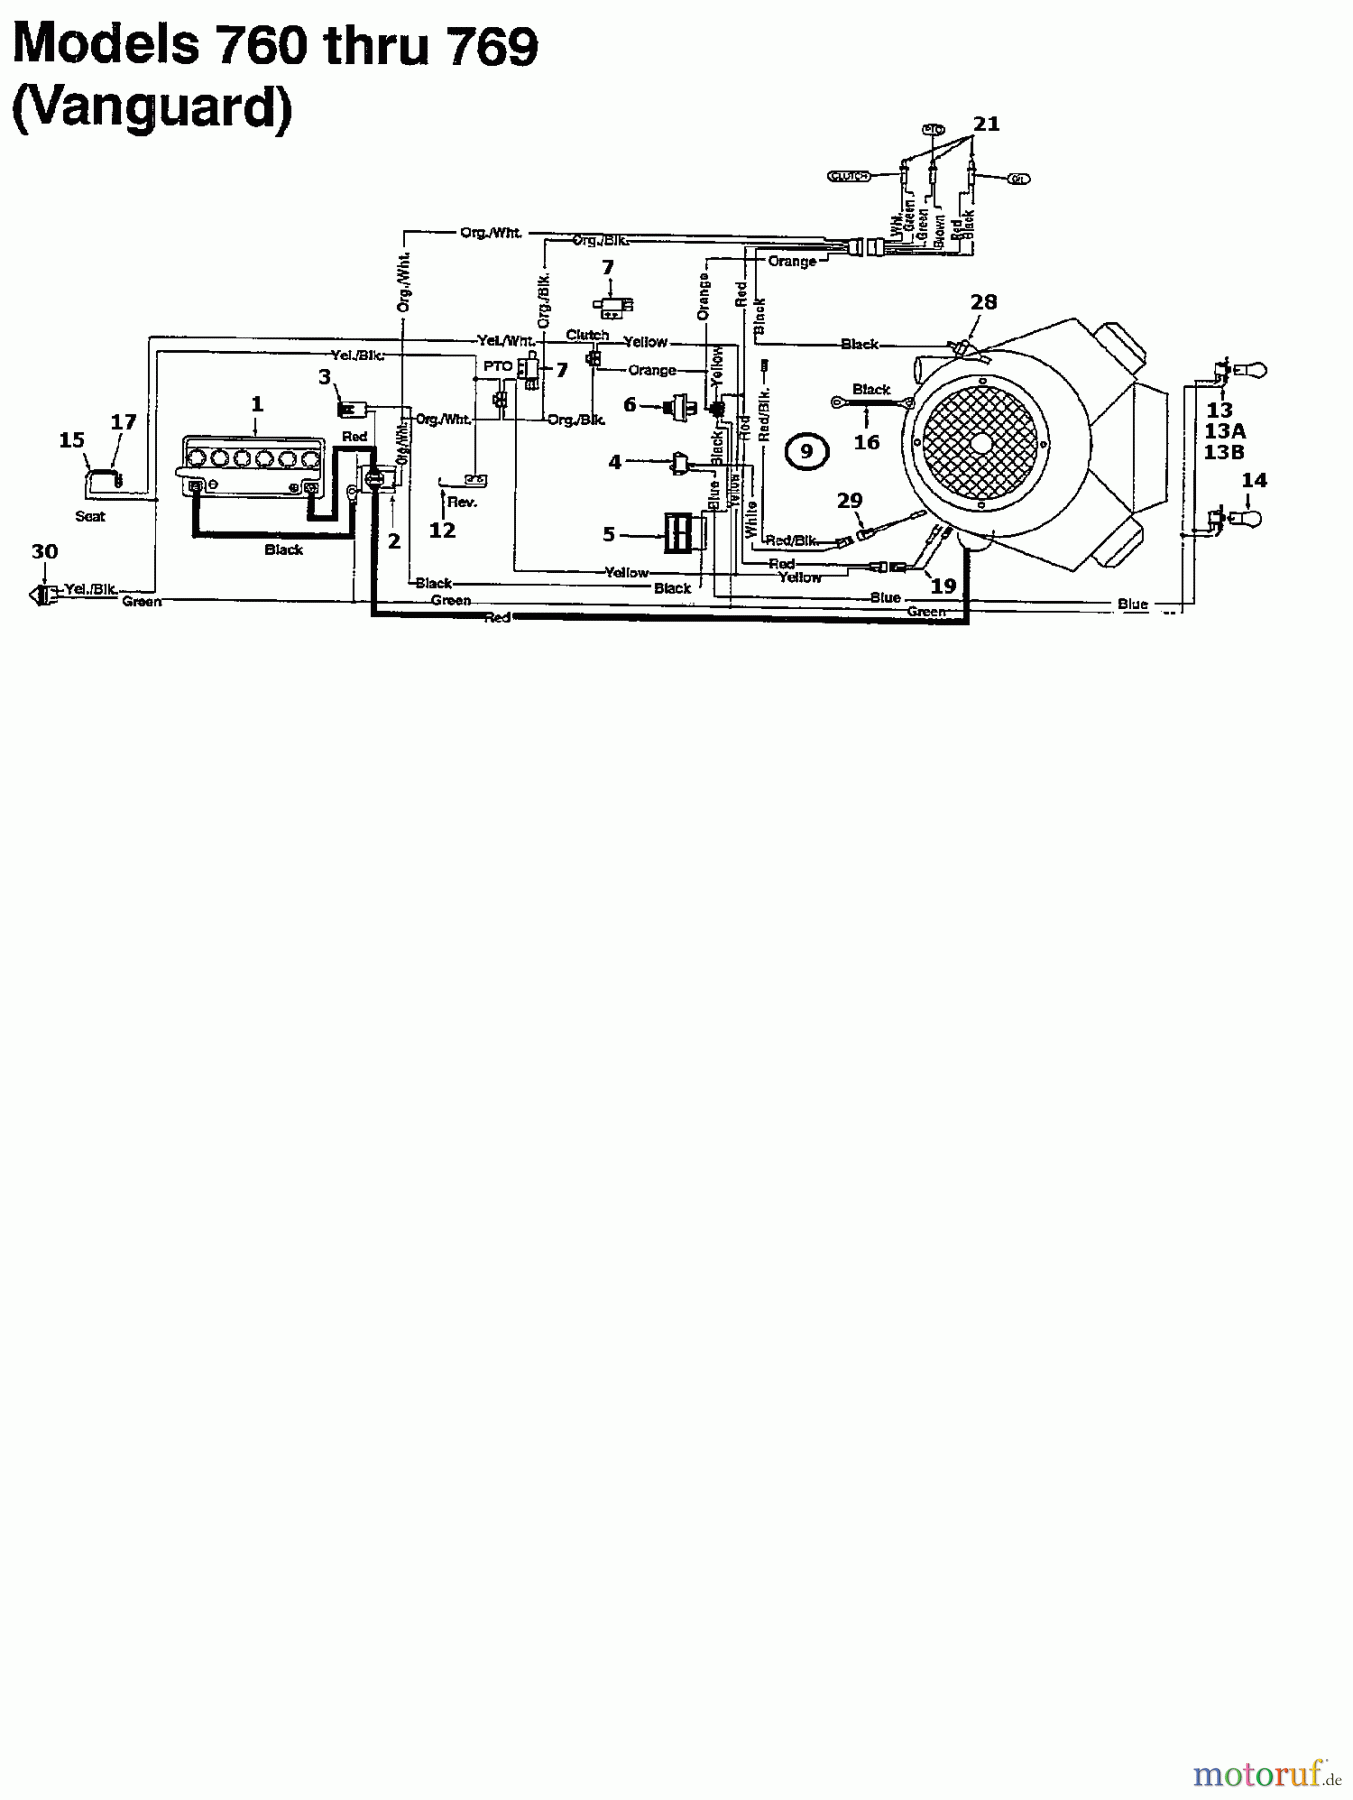  MTD Rasentraktoren 125/102 135K761N602  (1995) Schaltplan Vanguard